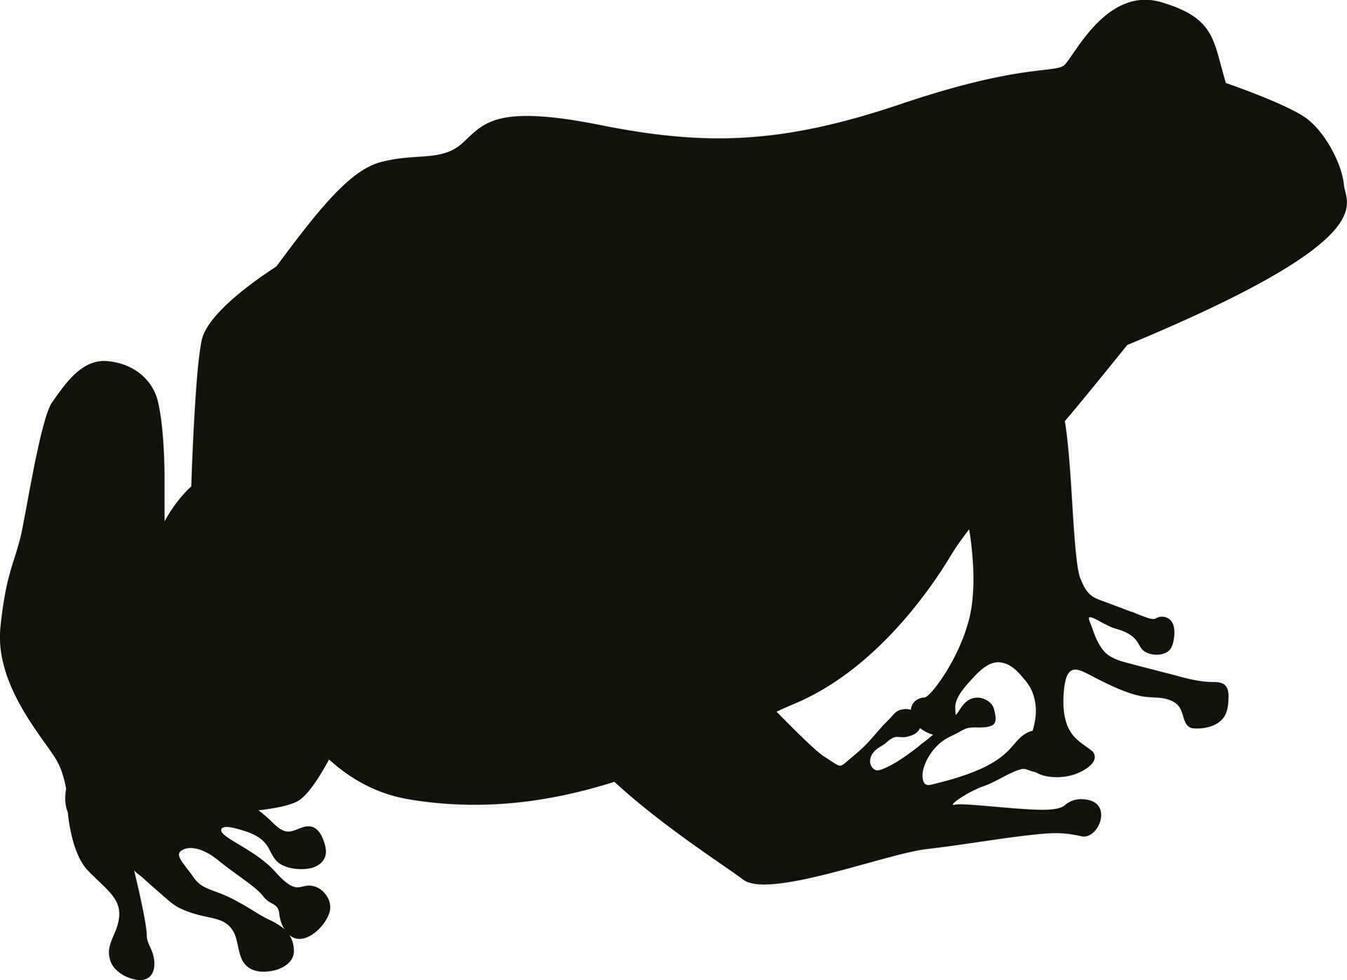 grenouille silhouette, amphibie, crapaud silhouette, devine le animal enfant jouer, silhouette vecteur